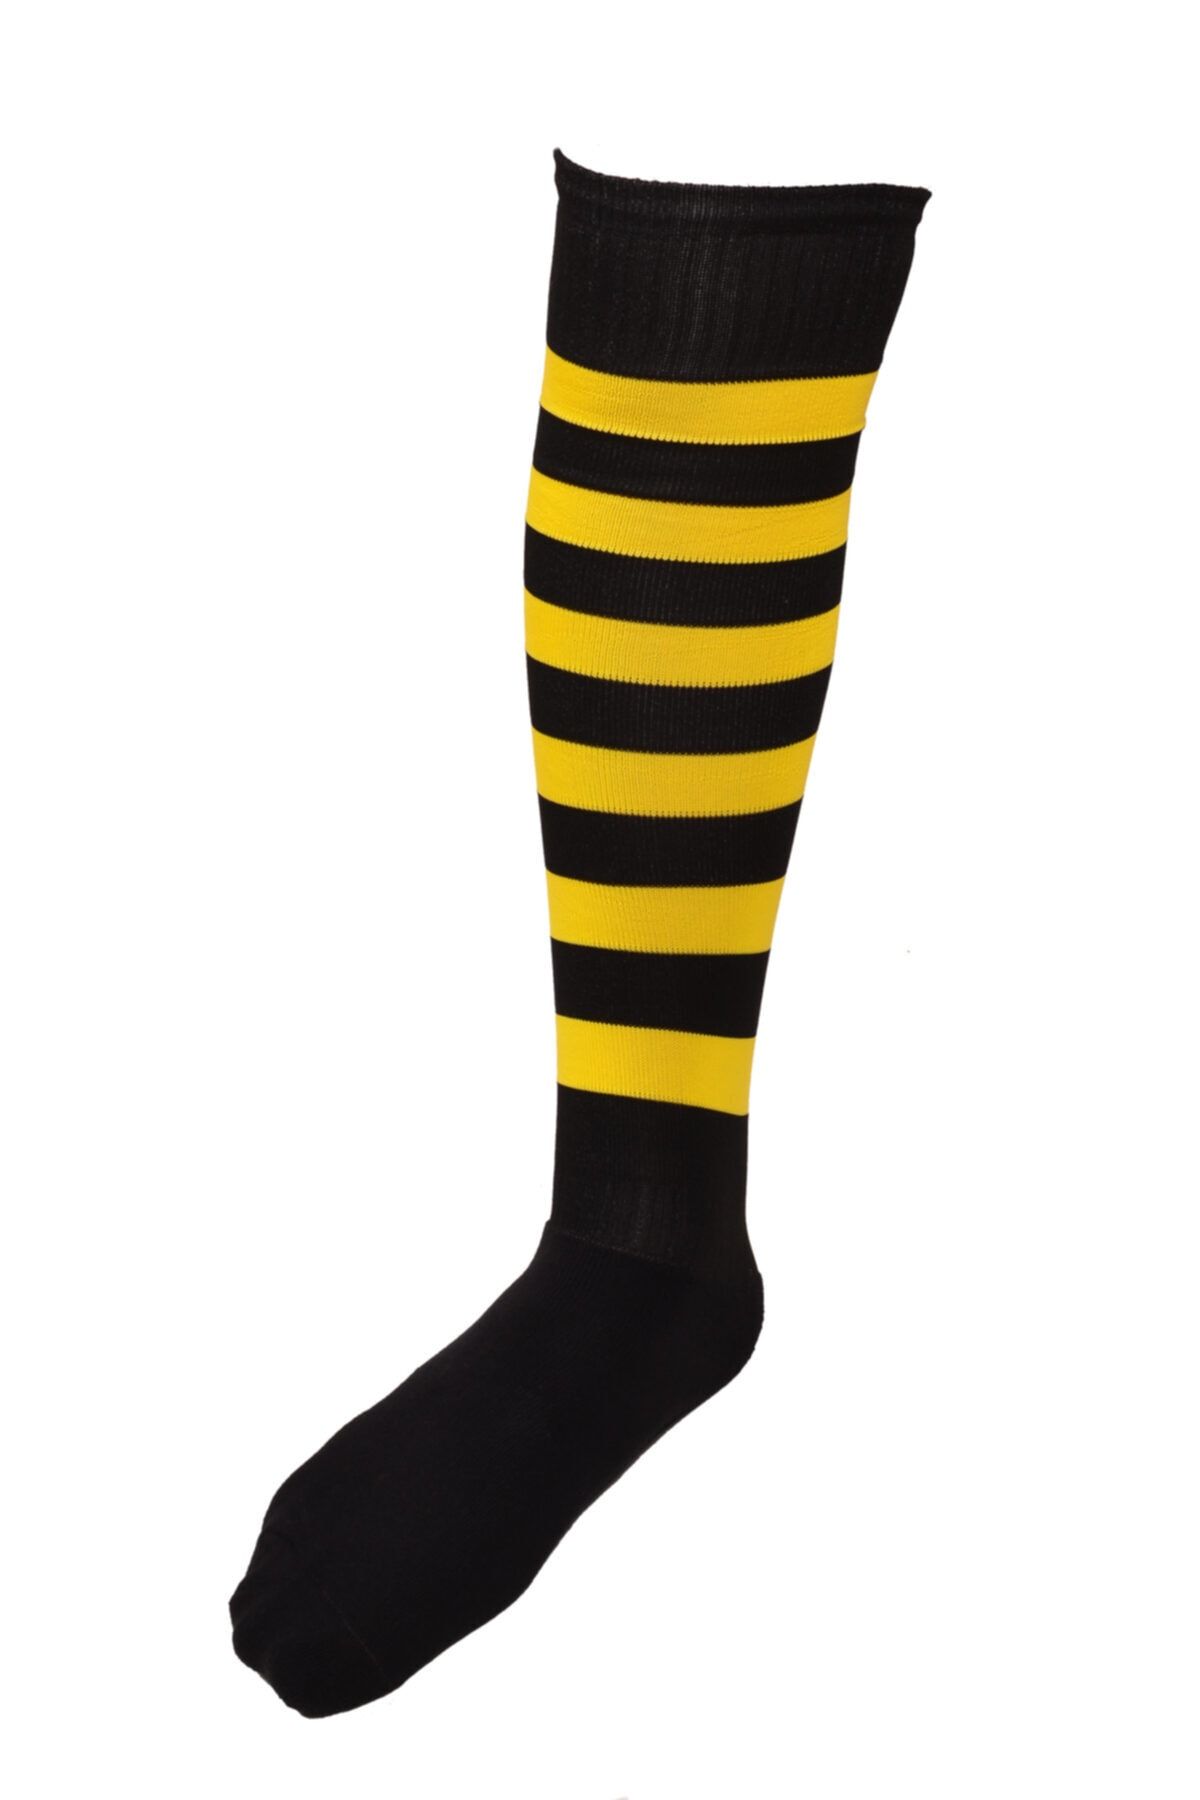 SCHMILTON Lüks Futbol Çorabı 6 Çift - Siyah-sarı Renk - Konç - Tozluk